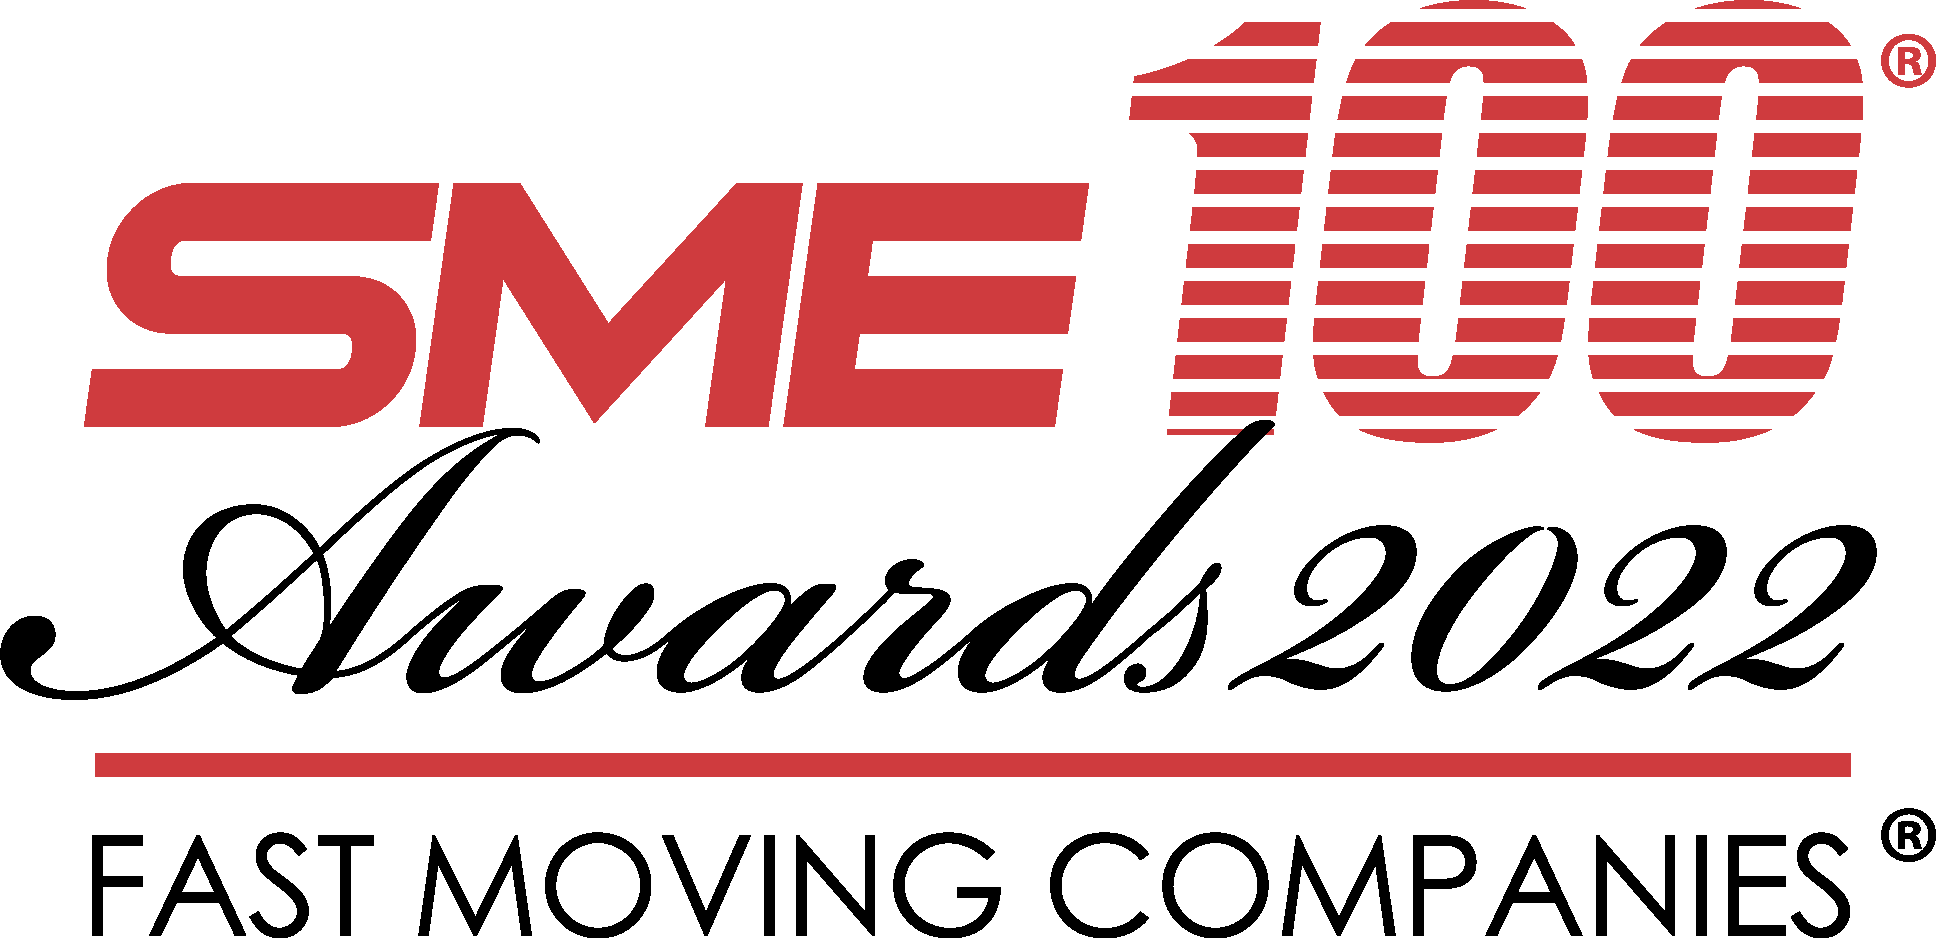 SME100 Award